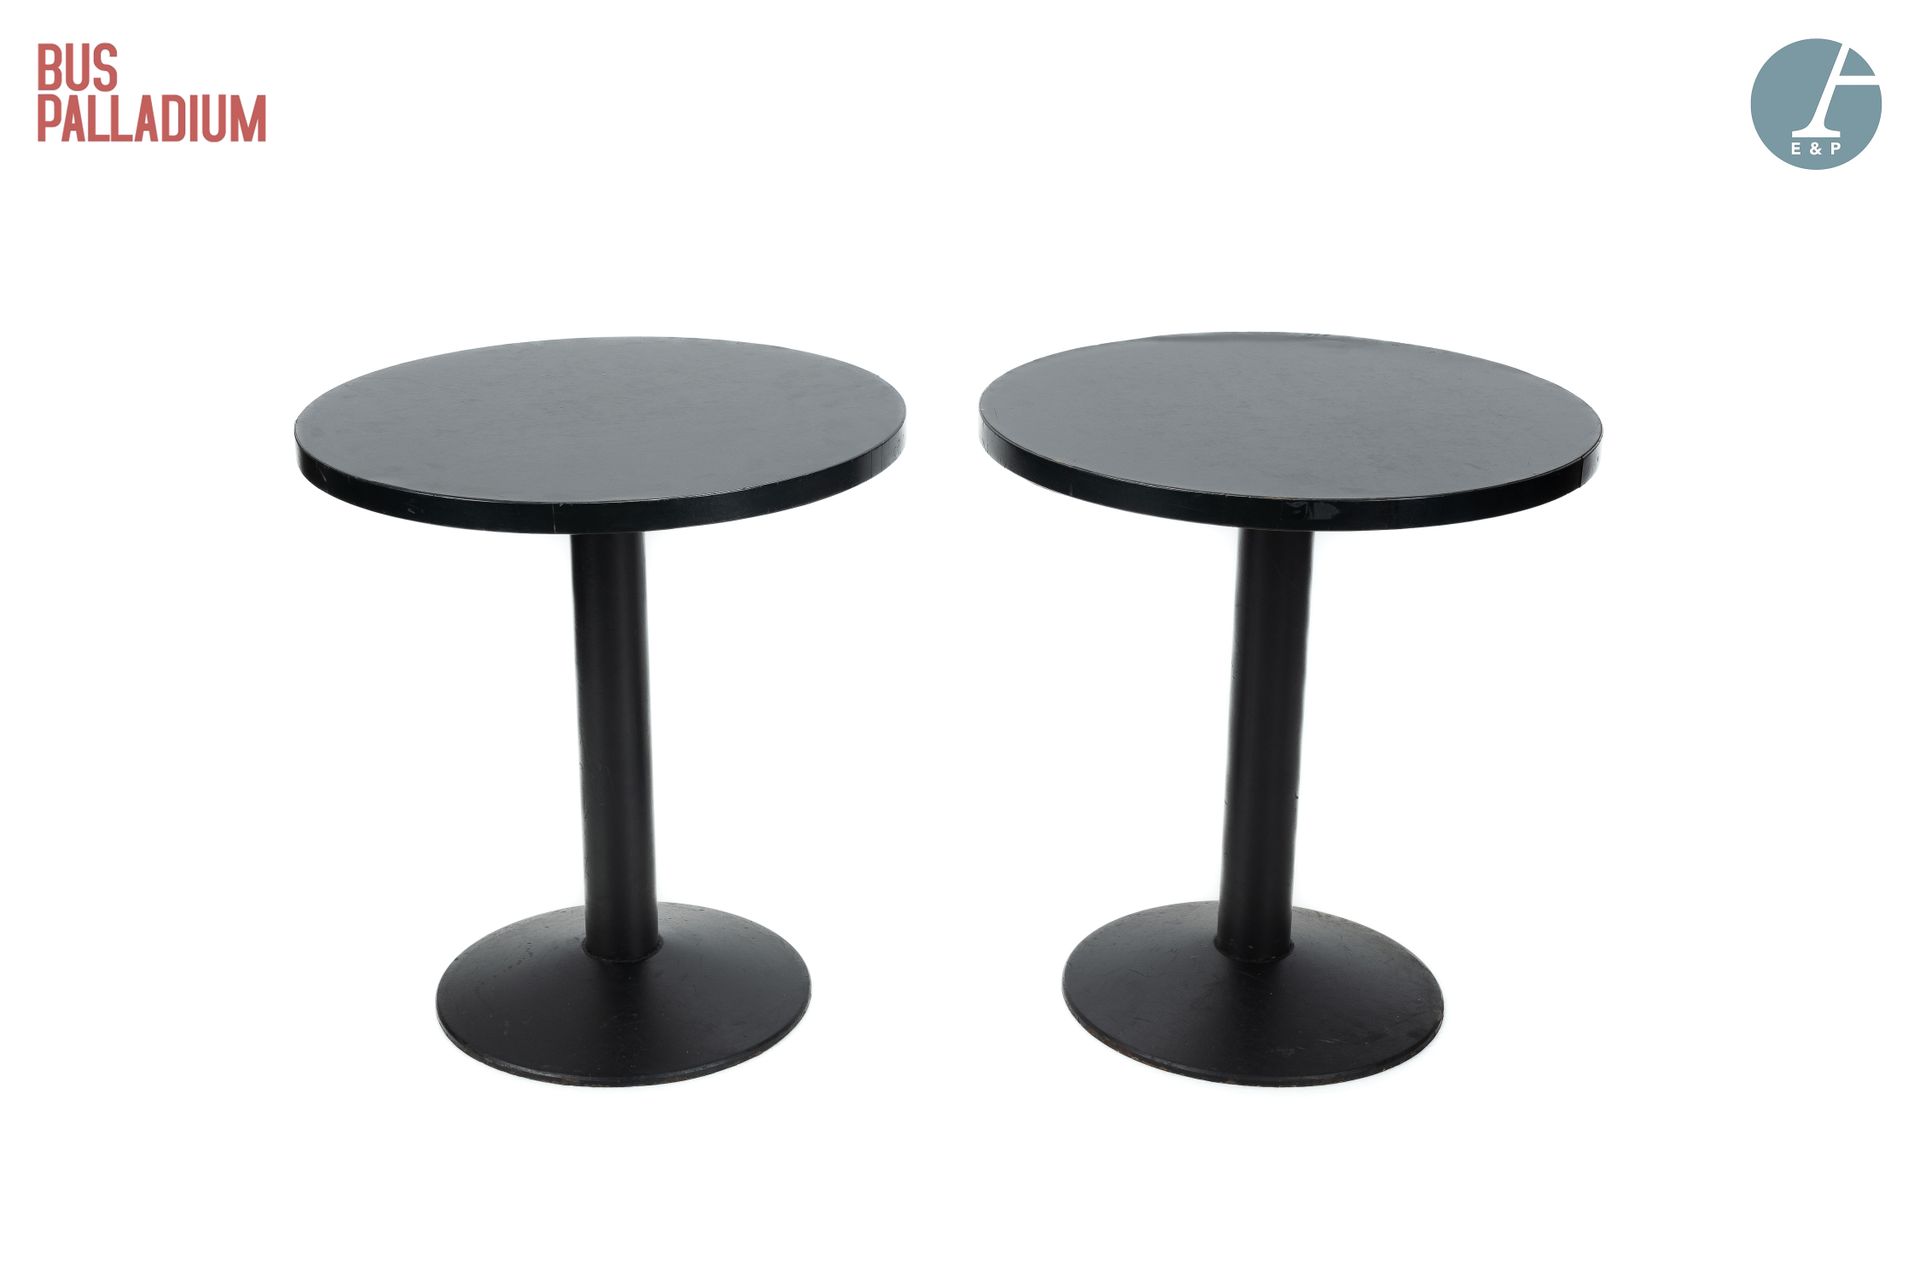 Null Aus dem Bus Palladium

Zwei runde Tische, die Tischplatte aus schwarzem Spe&hellip;